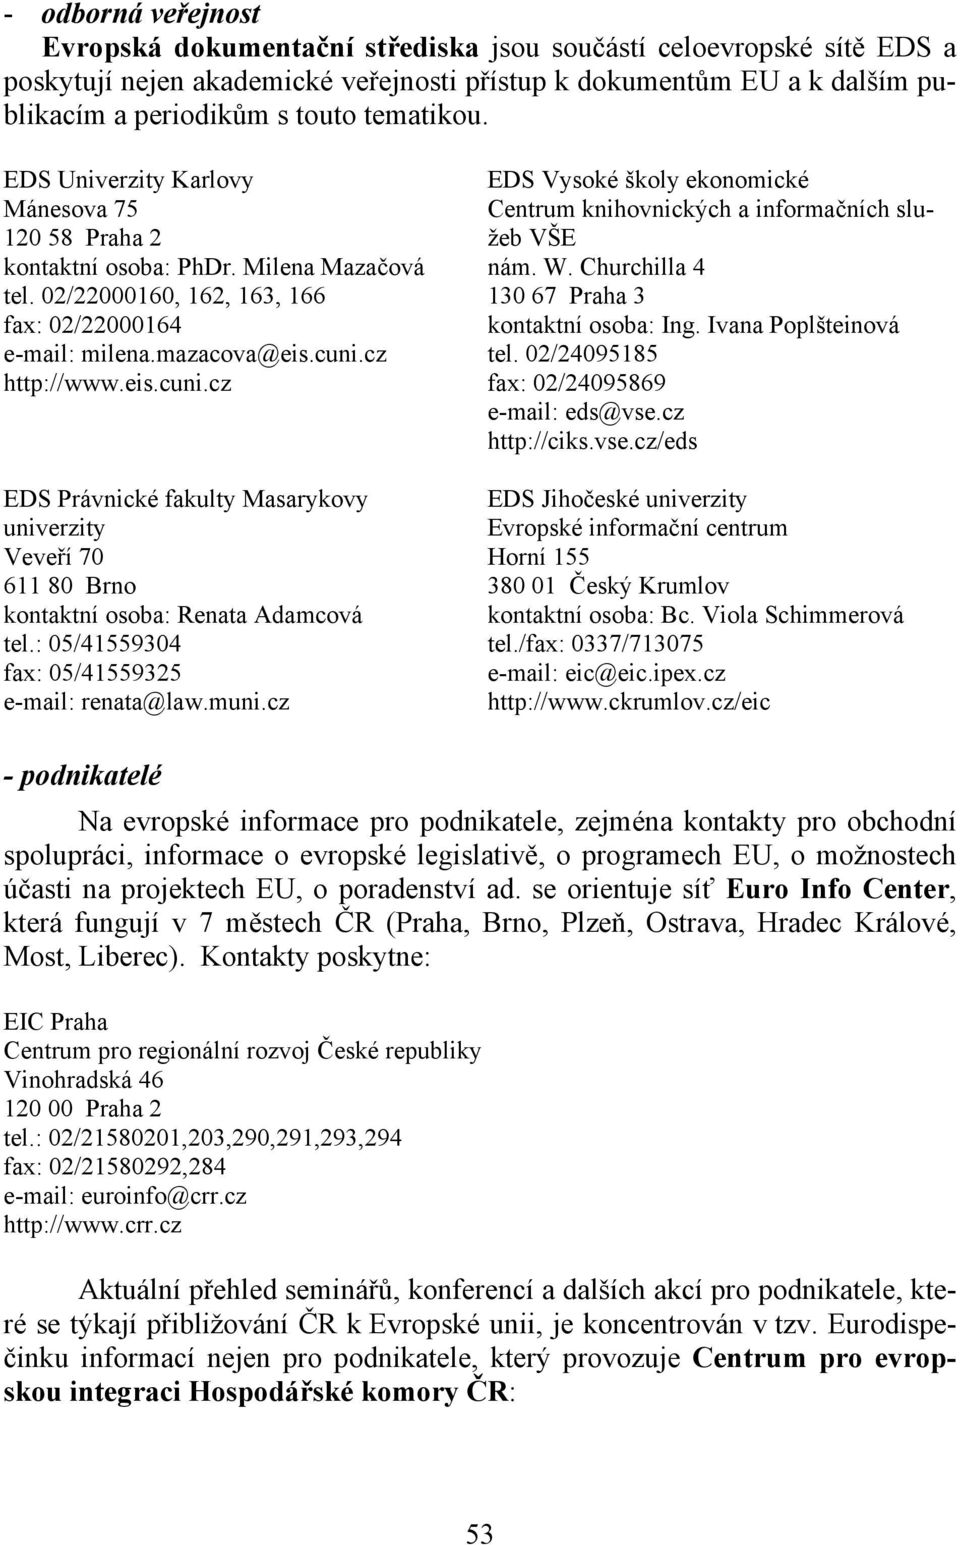 cz http://www.eis.cuni.cz EDS Právnické fakulty Masarykovy univerzity Veveří 70 611 80 Brno kontaktní osoba: Renata Adamcová tel.: 05/41559304 fax: 05/41559325 e-mail: renata@law.muni.